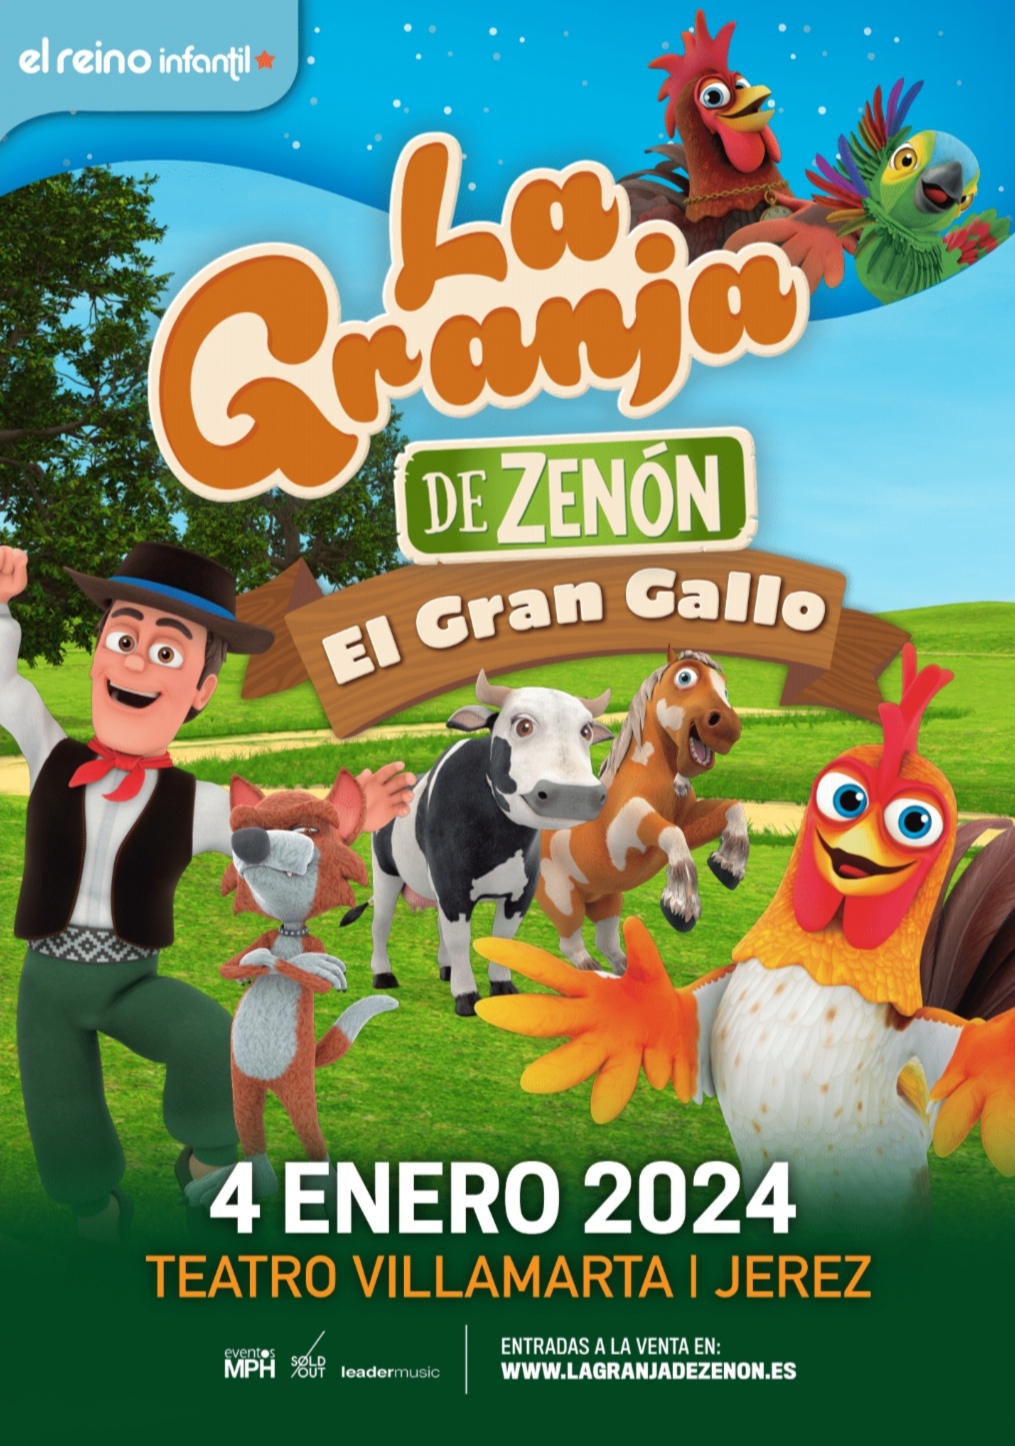 La Granja de Zenón presenta "El Gran Gallo": Un espectáculo inmersivo para toda la familia